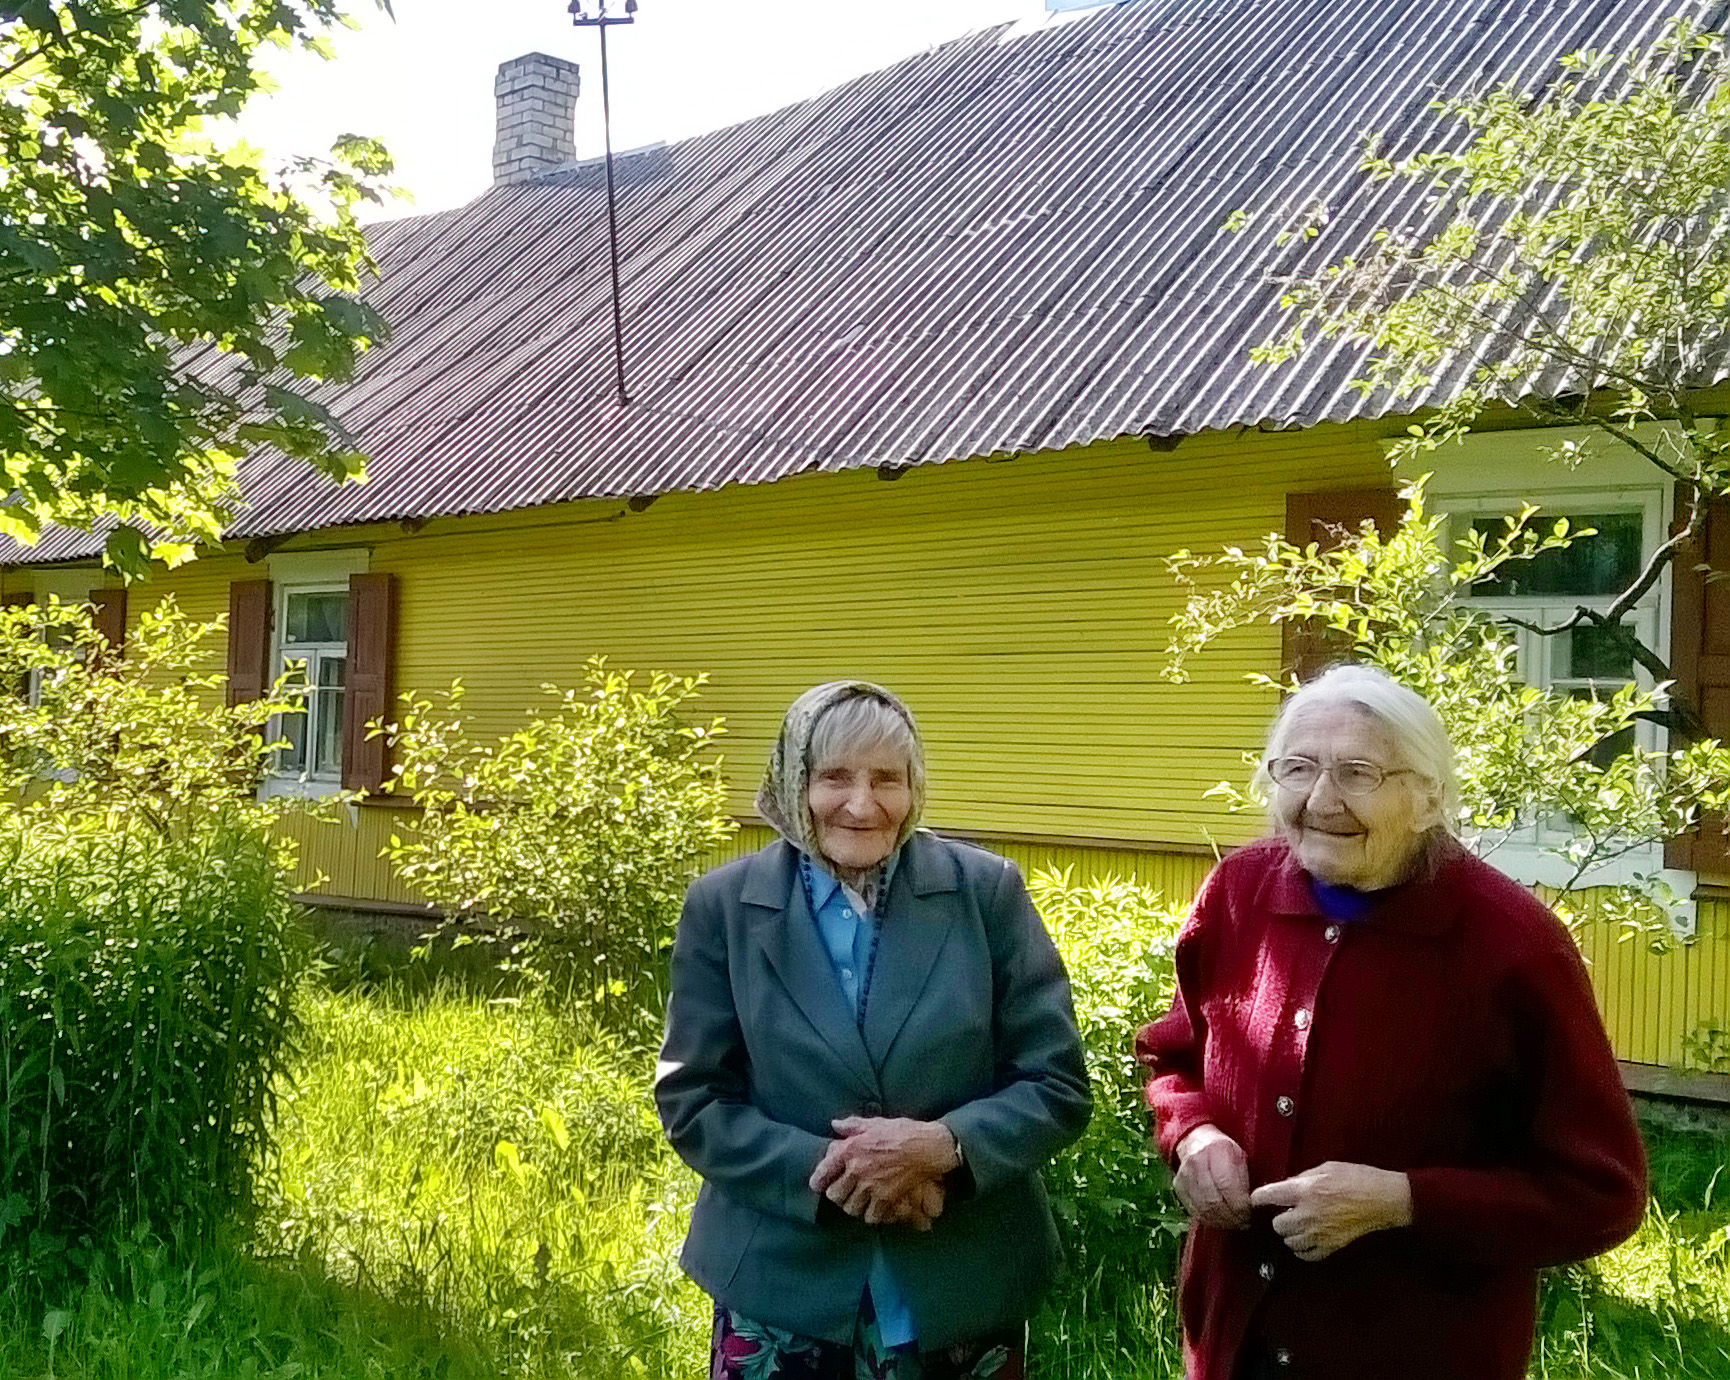  Siostra od Aniołów Irena Kardis wraz ze swoją siostrą Marią przed rodzinnym domem Fot. S. Rita Gvazdaitytė 